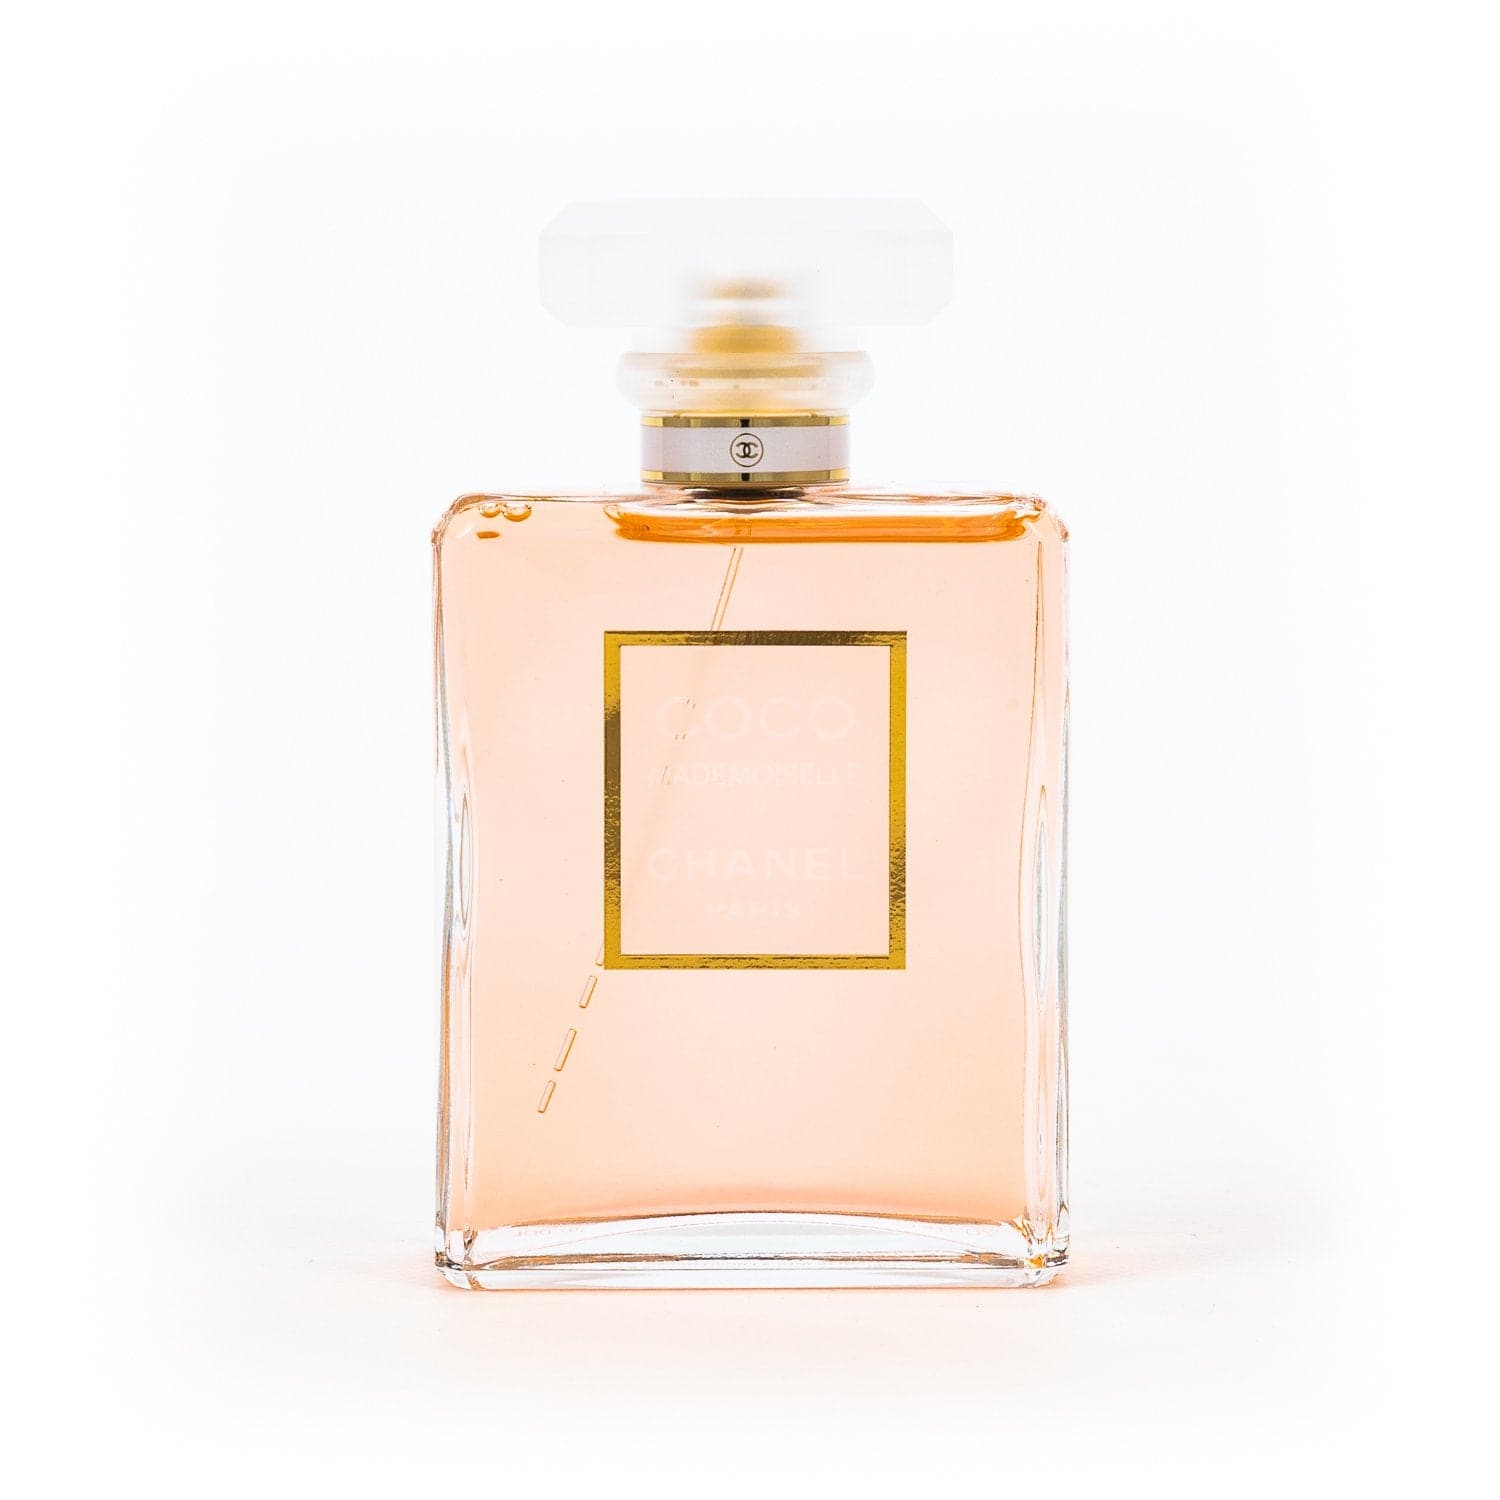 CHANEL Coco Mademoiselle - Kaufen Sie eine Probe – Parfumguss